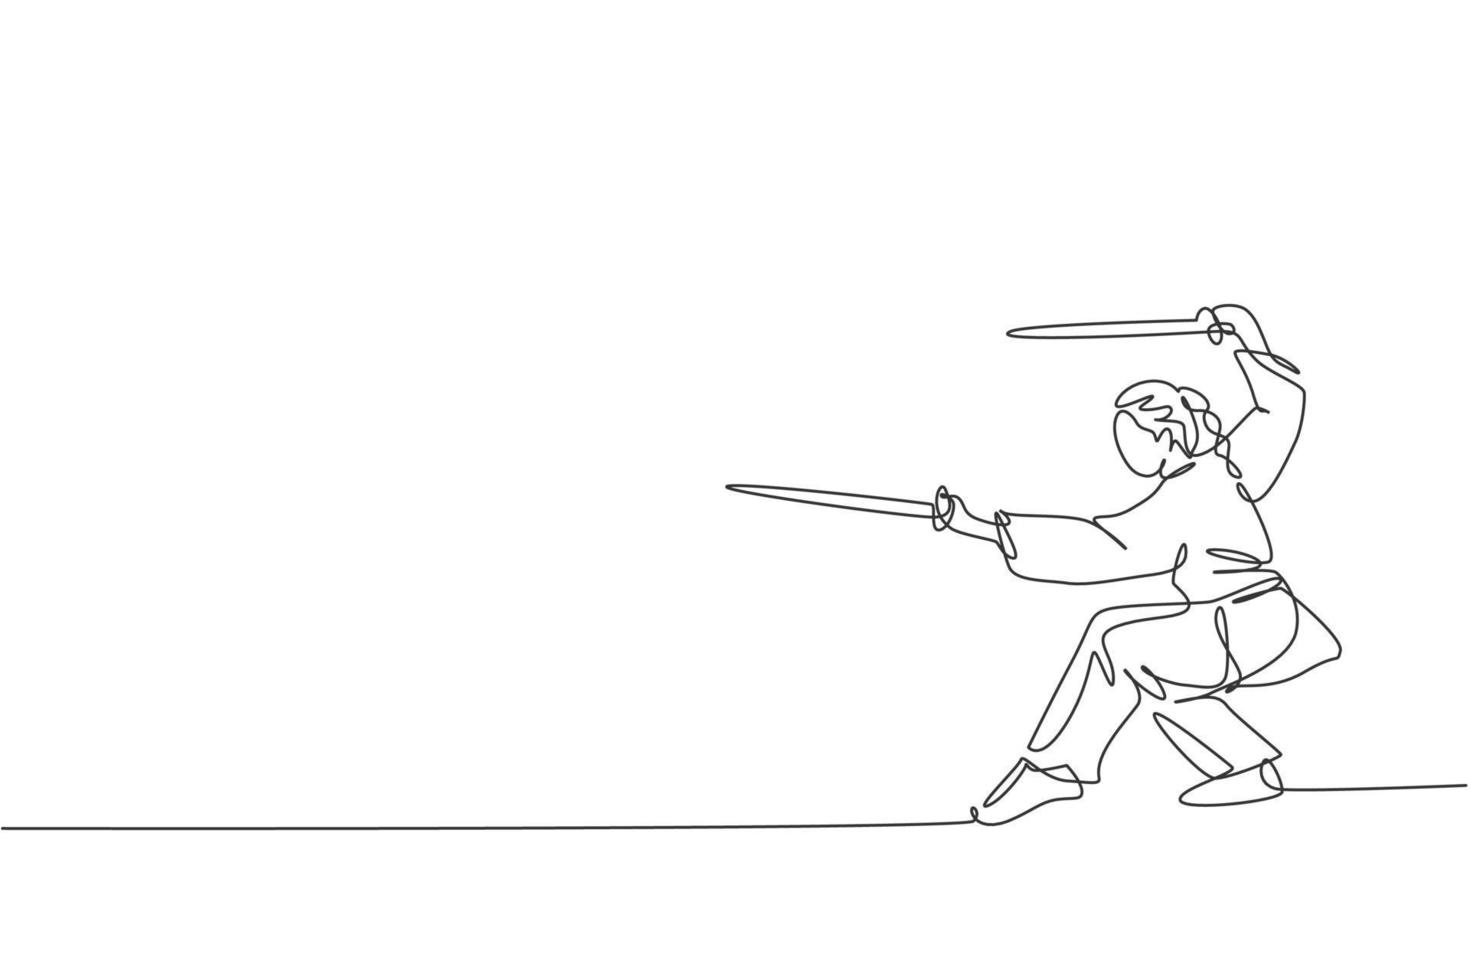 enkele doorlopende lijntekening van een jonge vrouw wushu-jager, kungfu-meester in uniforme training met zwaarden in het dojocentrum. vechtwedstrijd concept. trendy één lijn tekenen ontwerp vectorillustratie vector